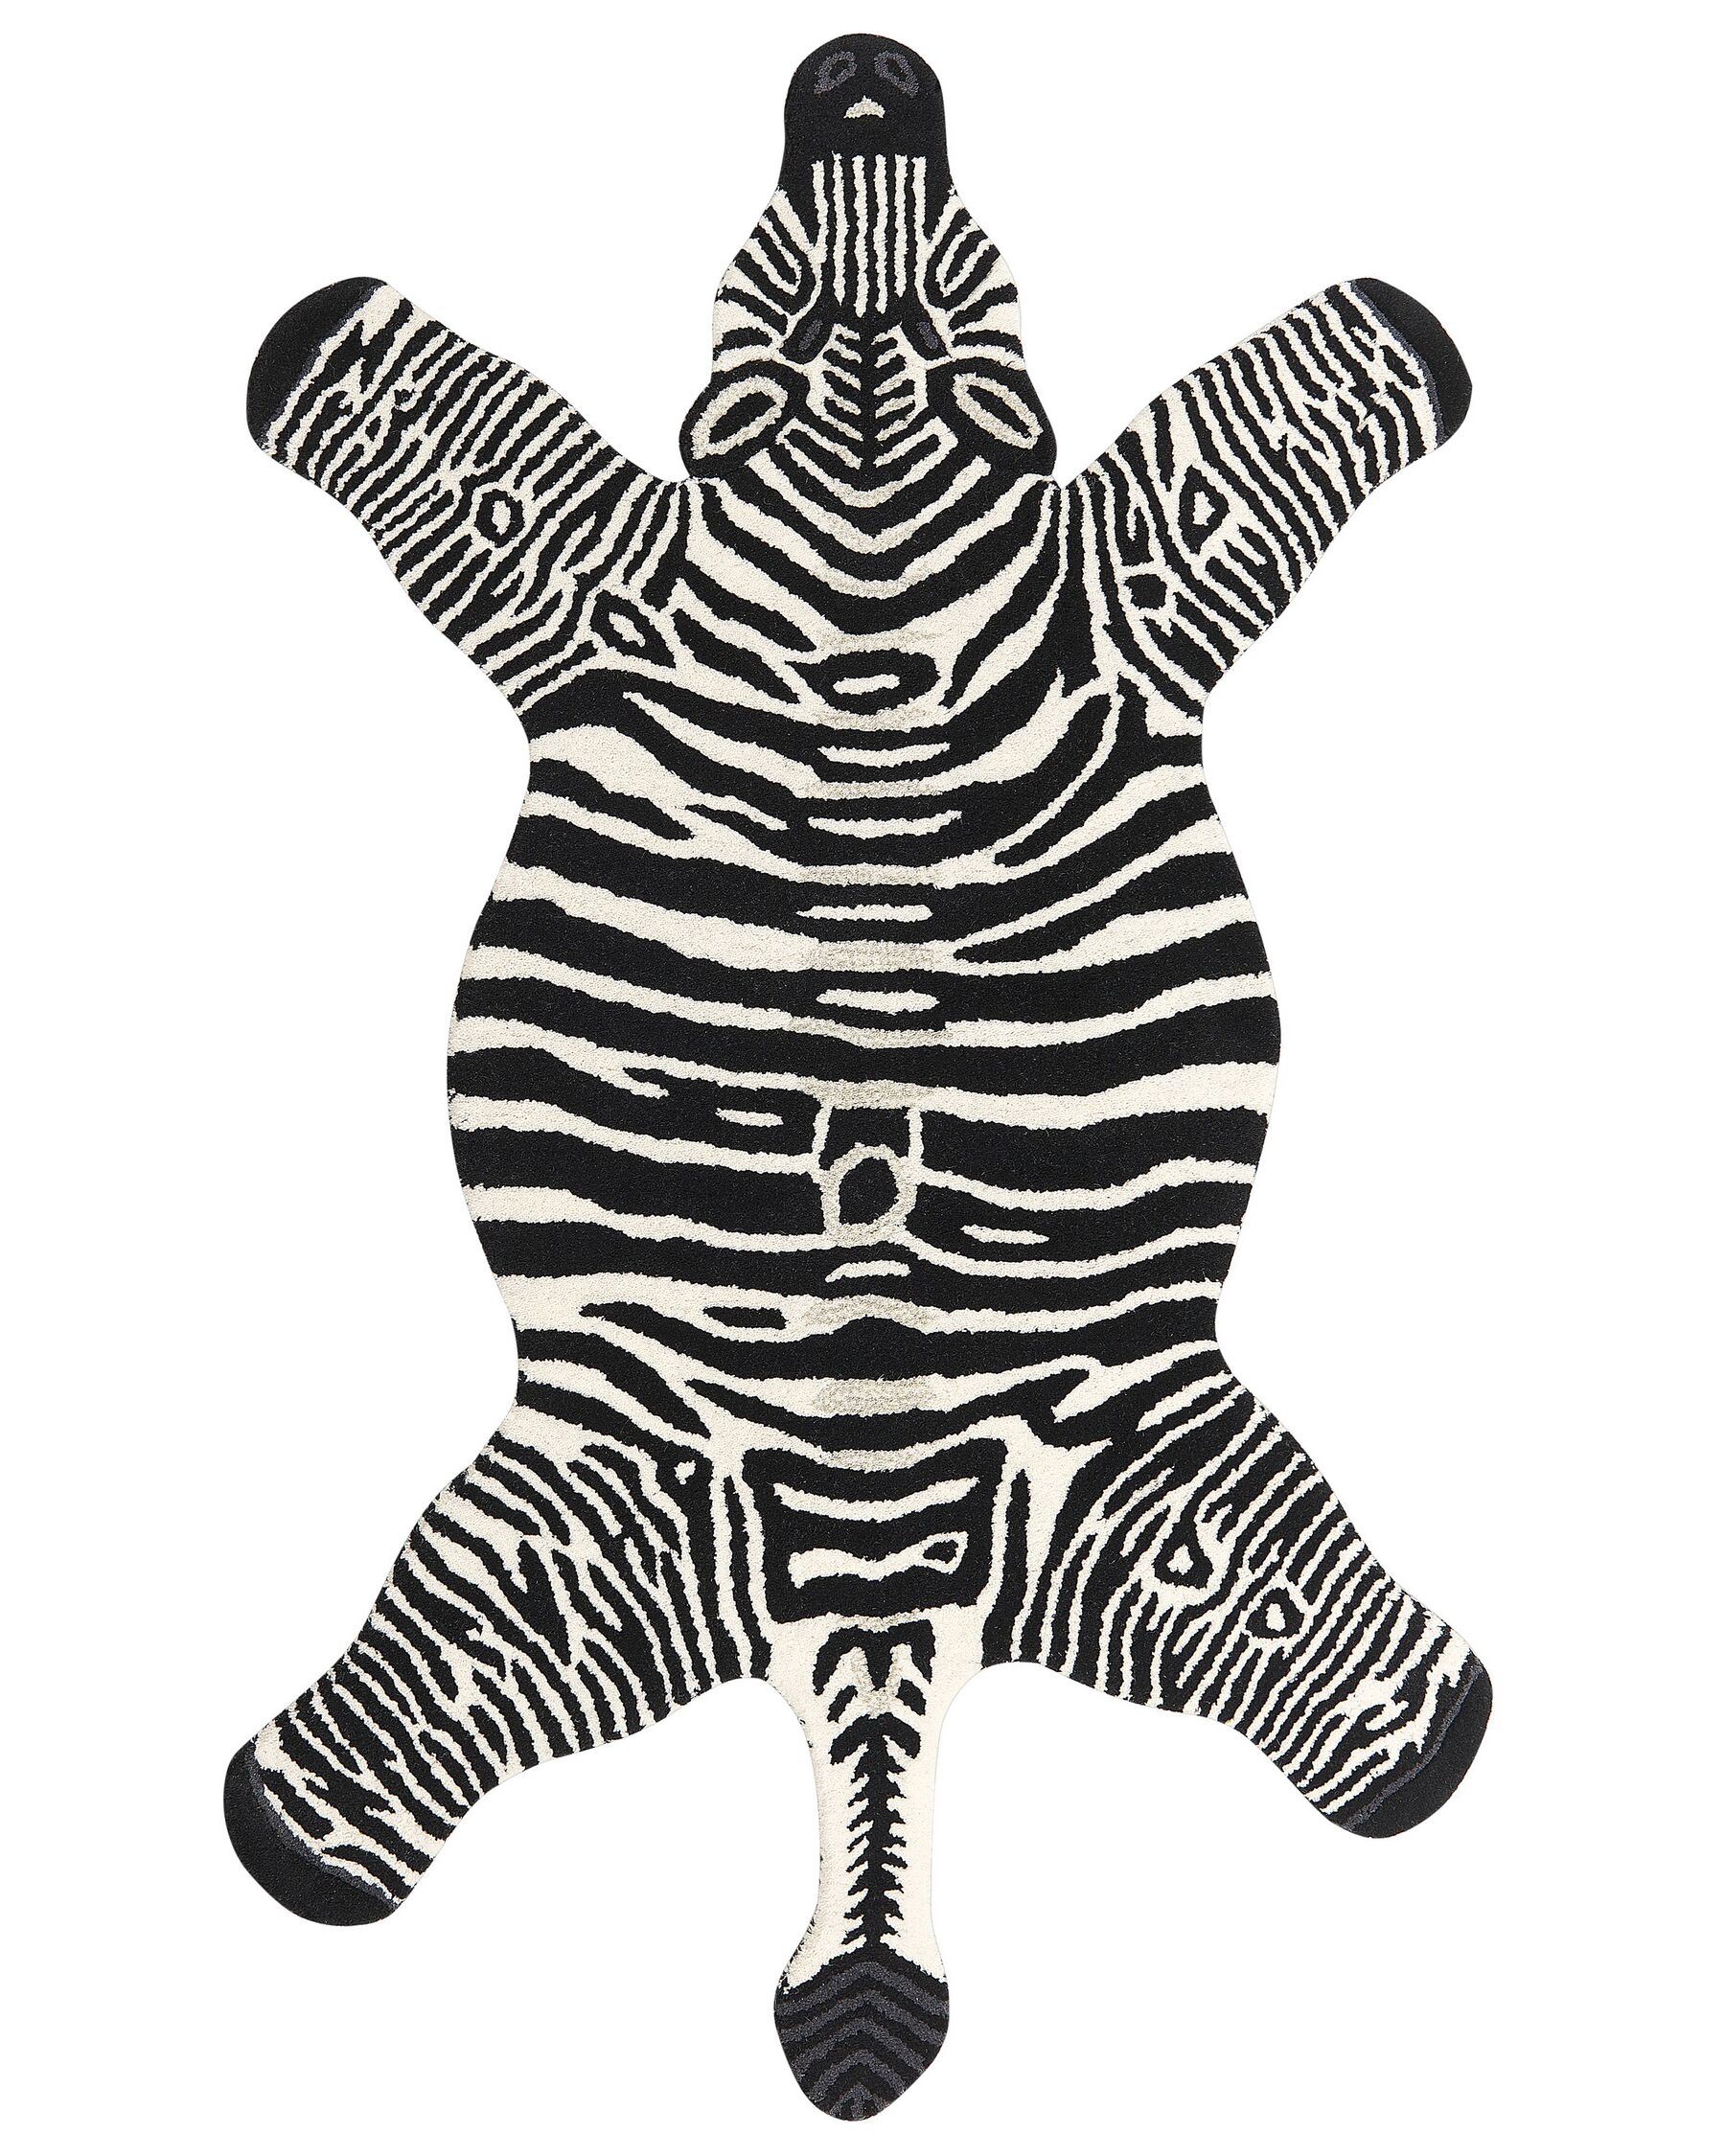 Wool Kids Rug Zebra 100 x 160 cm Black and White MARTY_873986